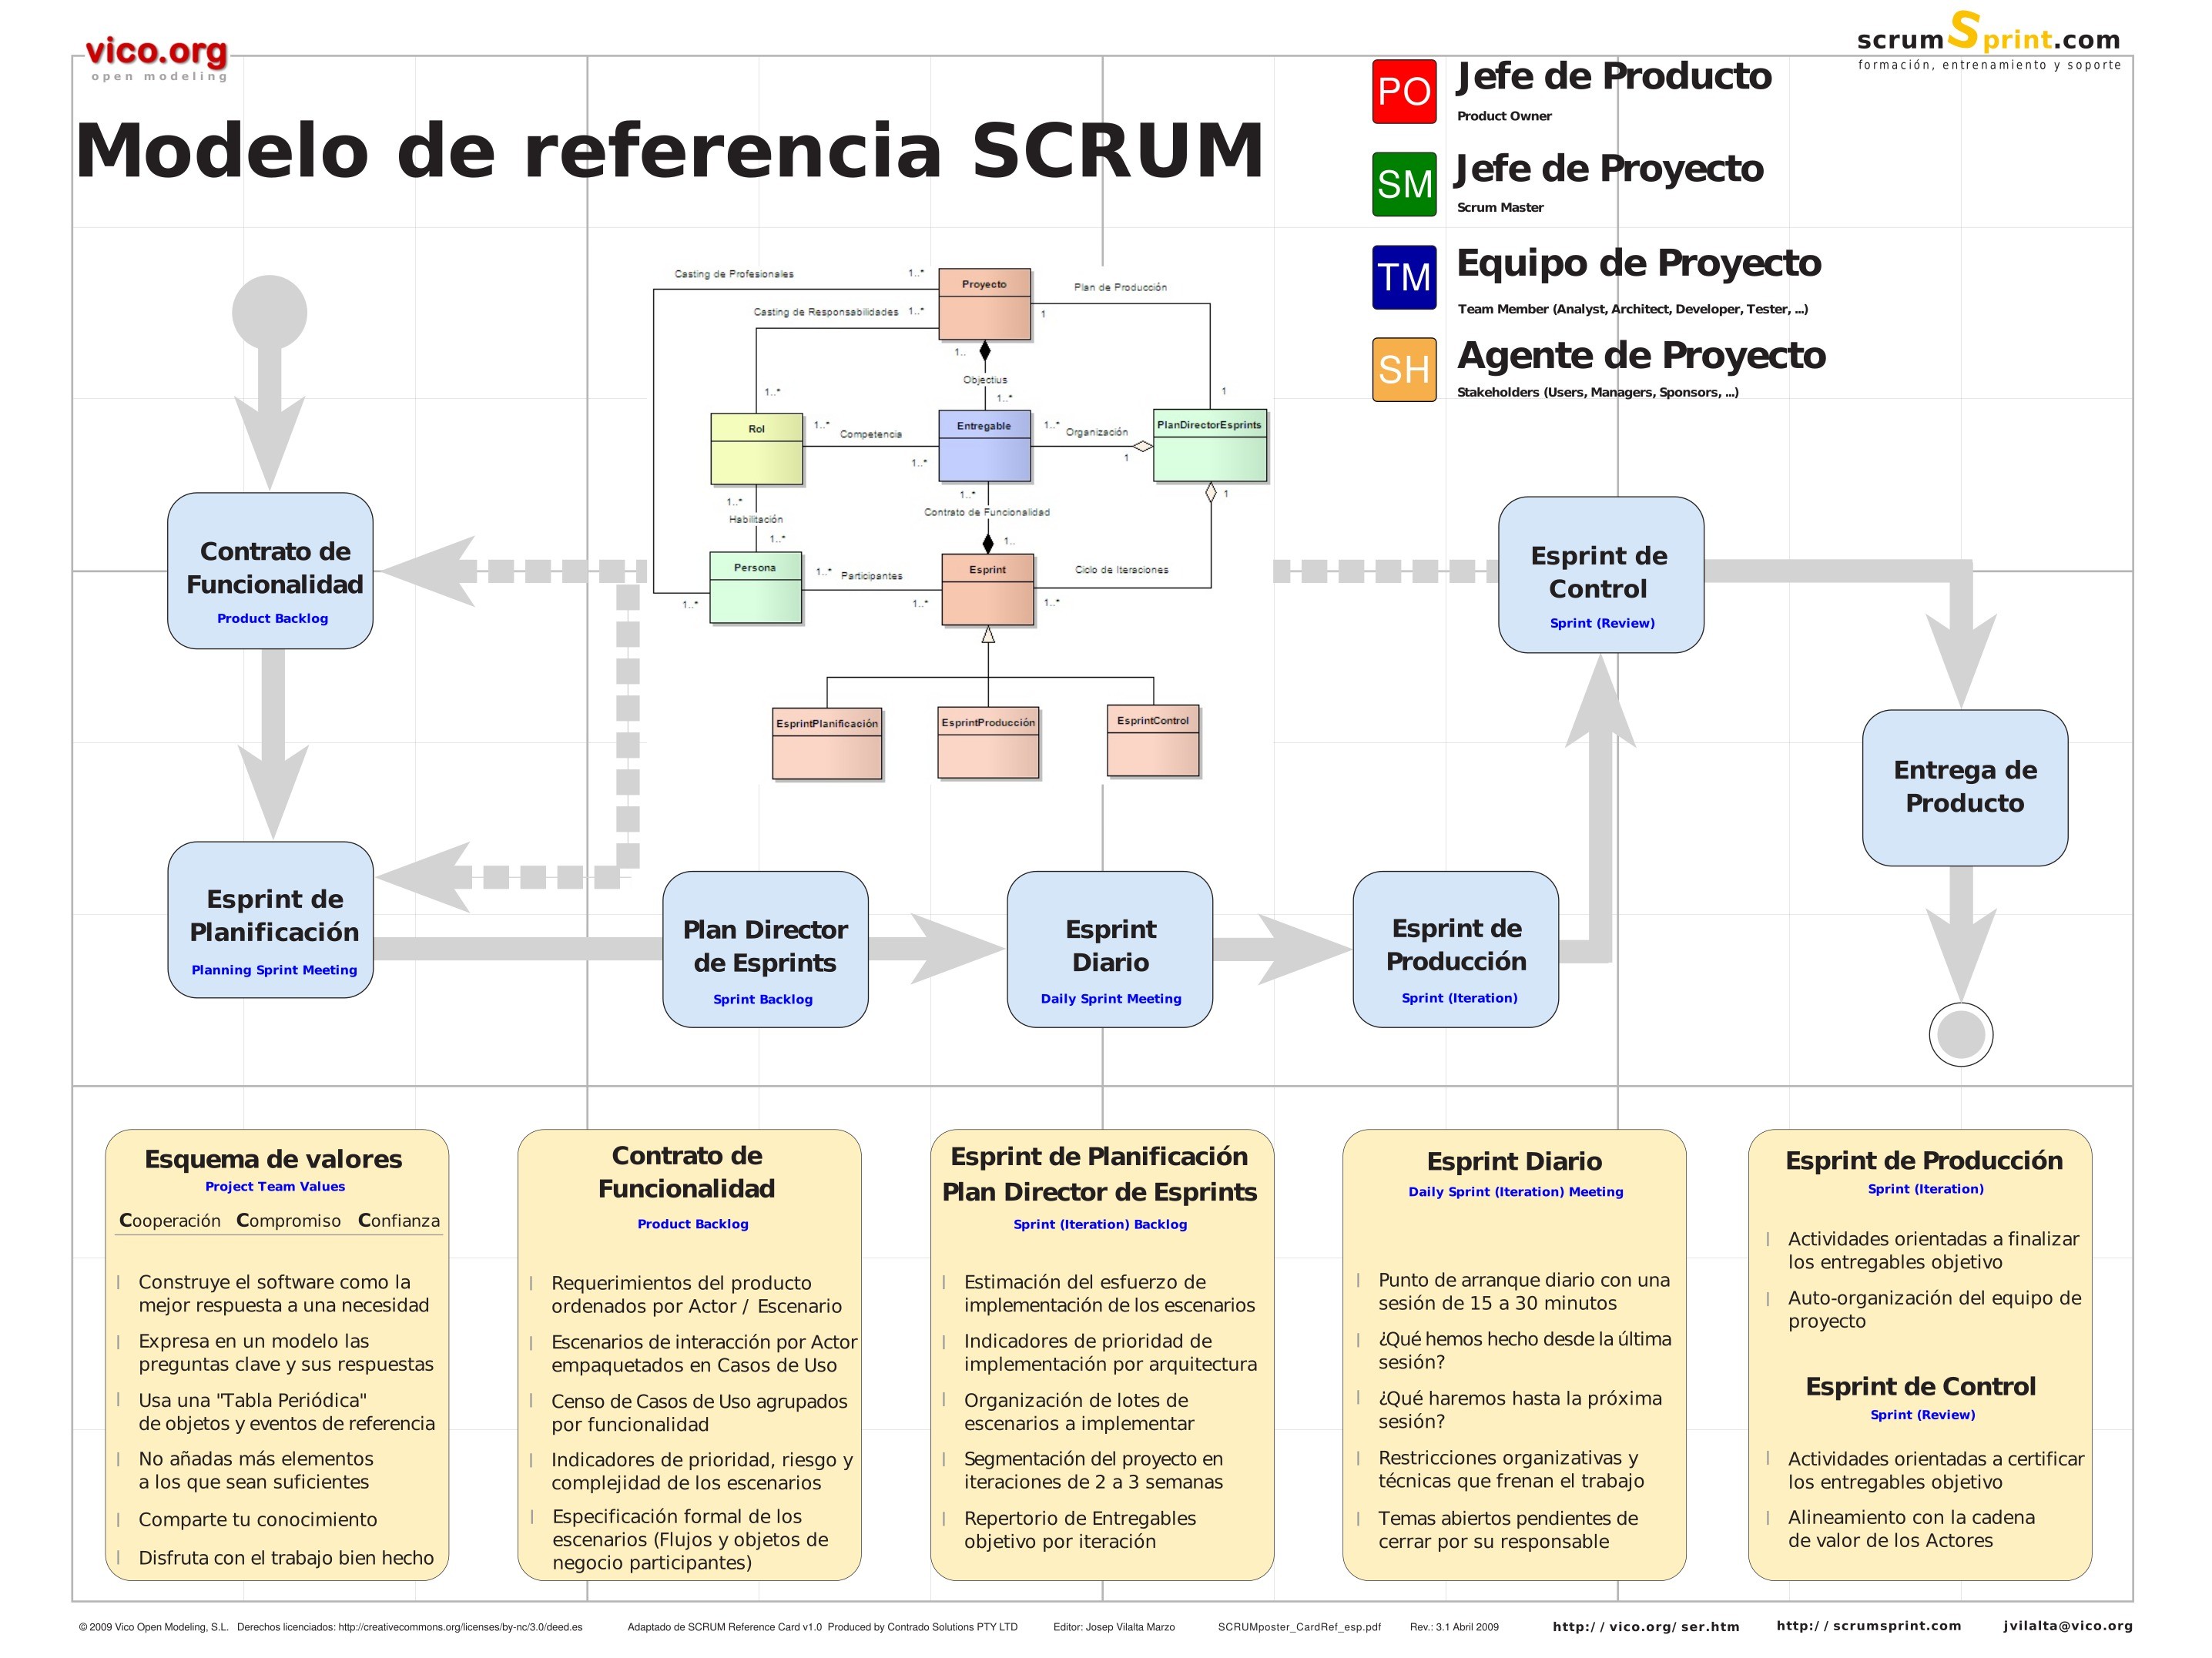 PDF de programación - Modelo de referencia SCRUM